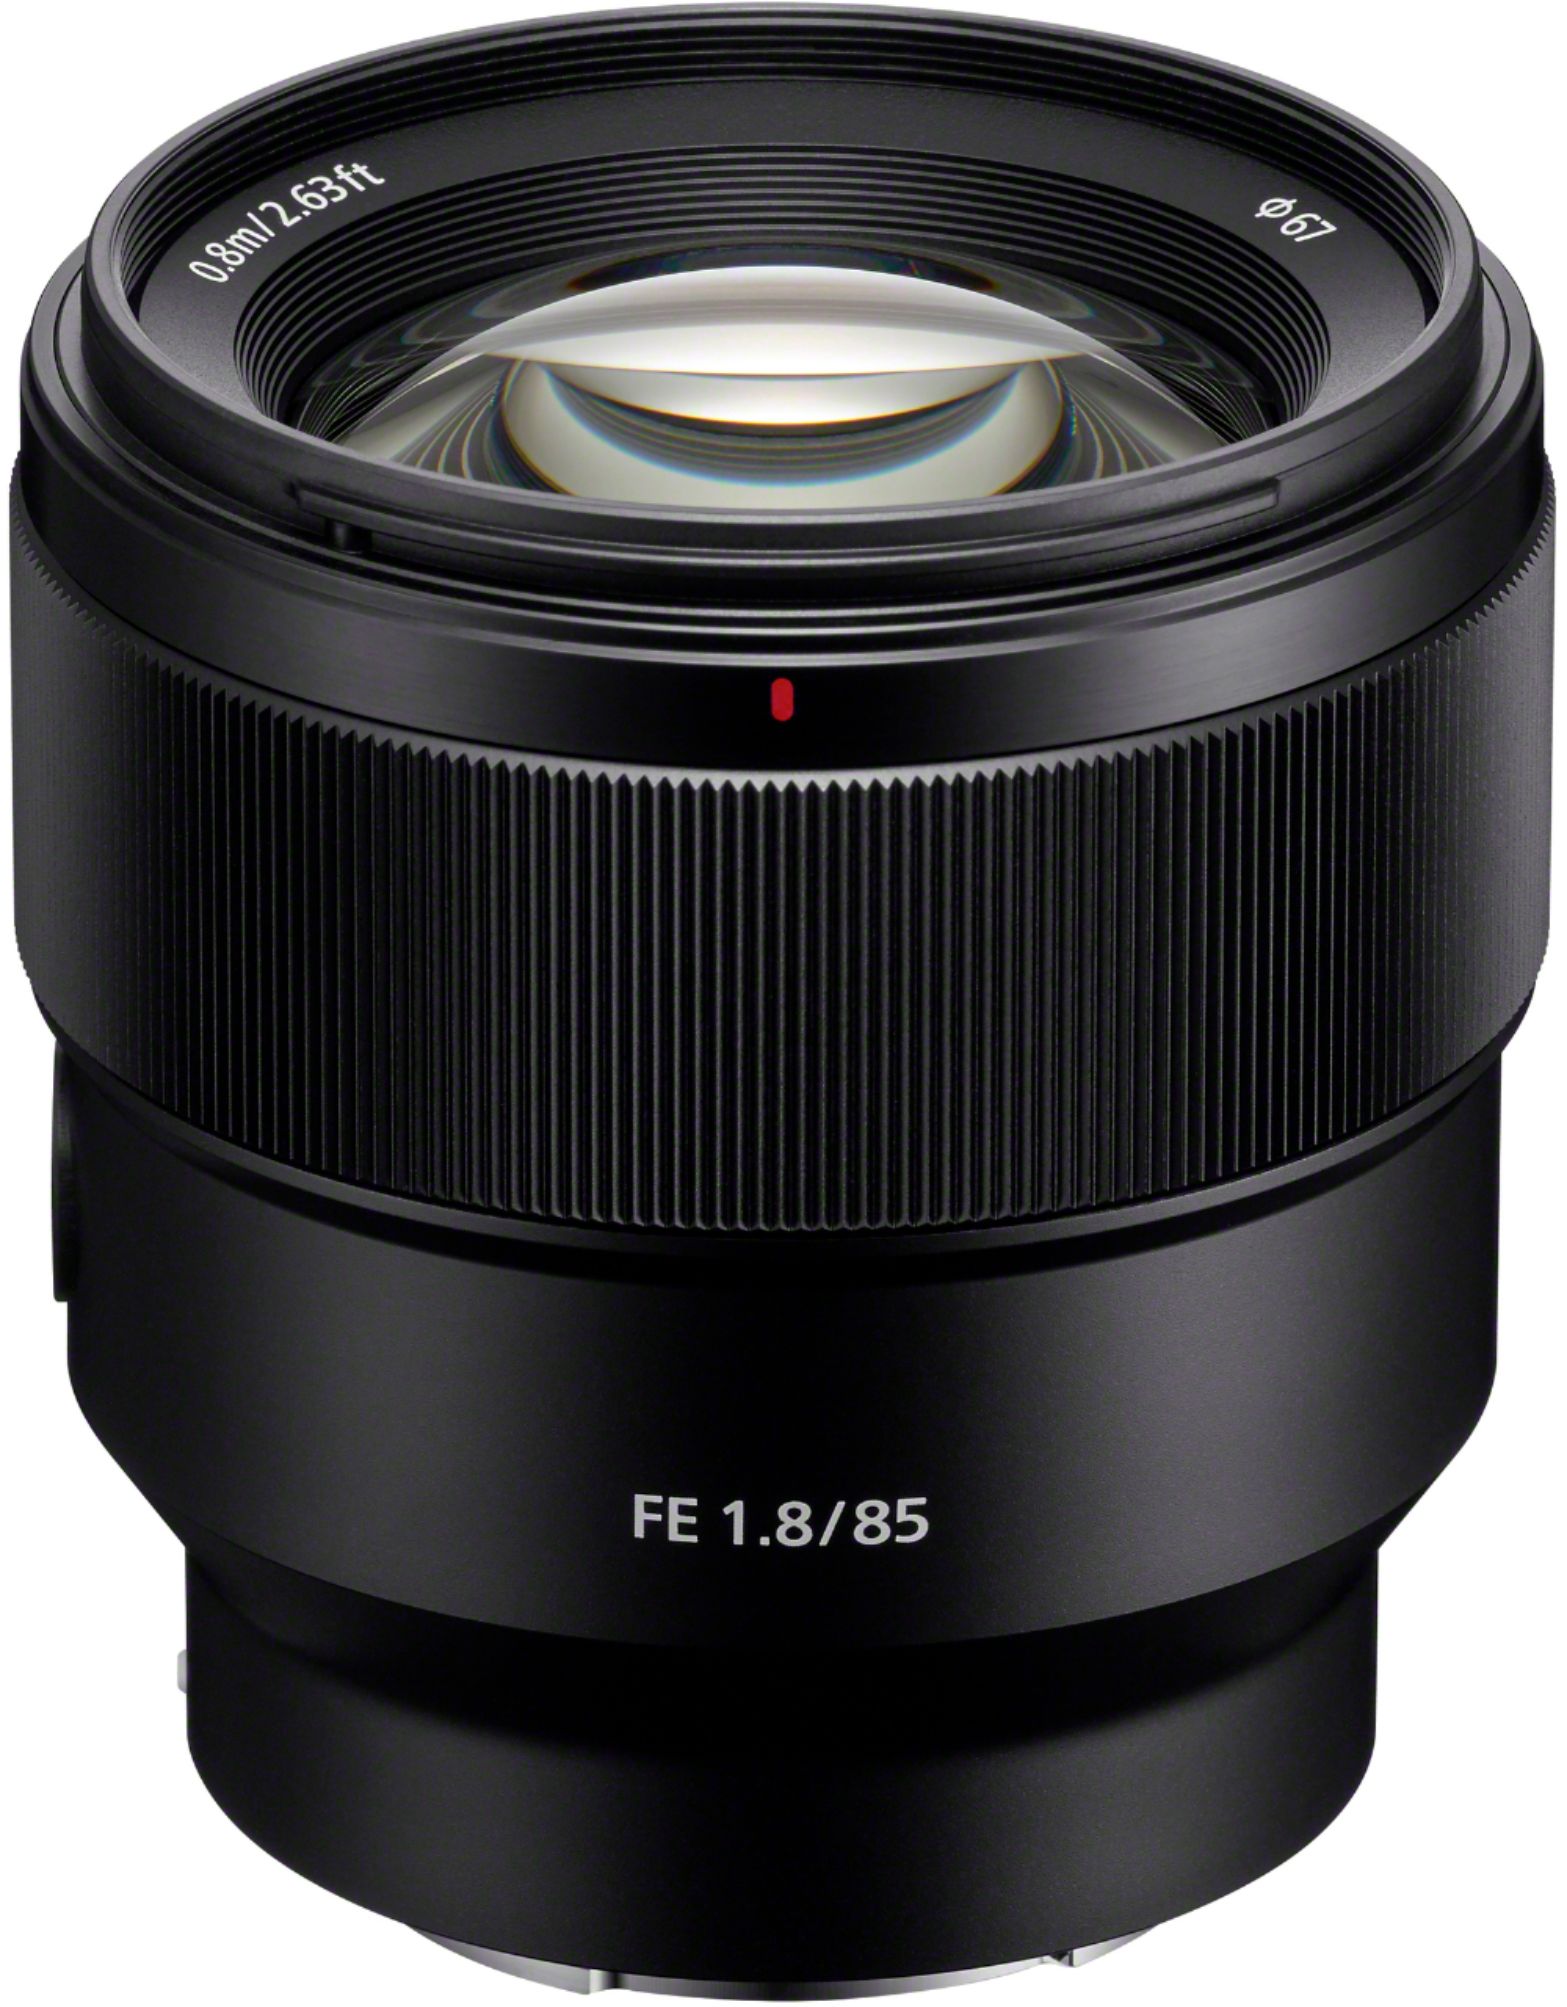 Sony FE 85mm f/1.8 Telephoto Prime Lens for E-mount Cameras Black  SEL85F18/2 - Best Buy